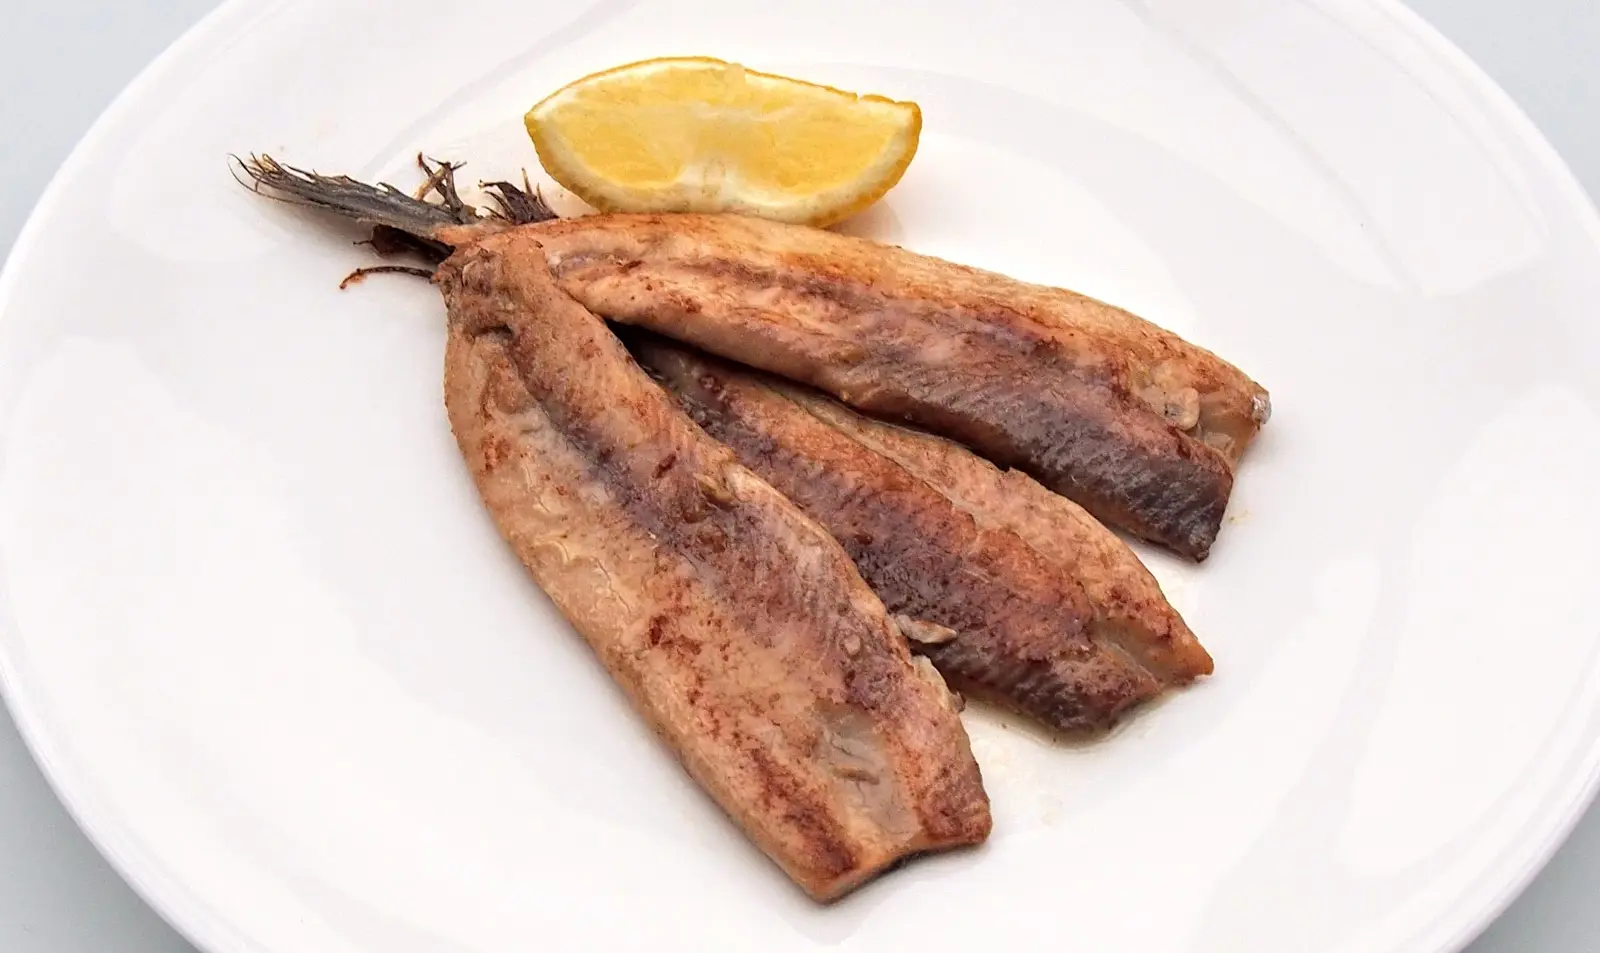 smoked herrings - What is smoked herring